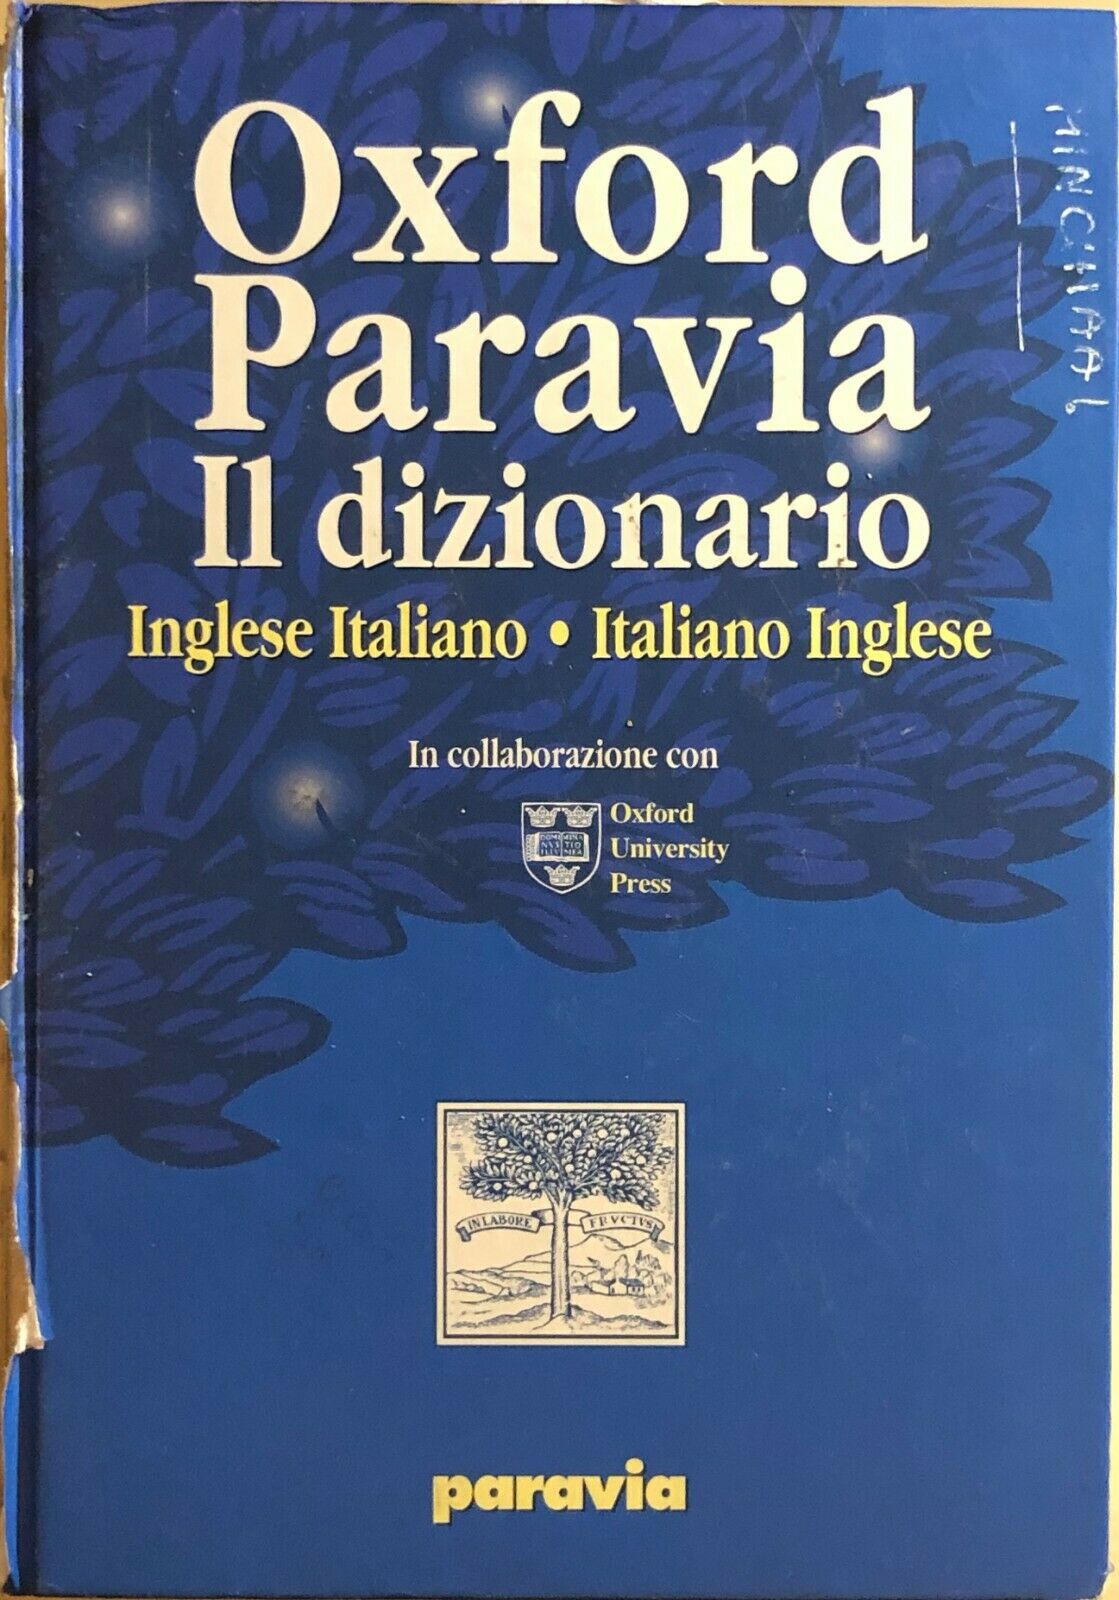 Paravia Il dizionario Inglese-italiano italiano-inglese, 2001, Oxford University